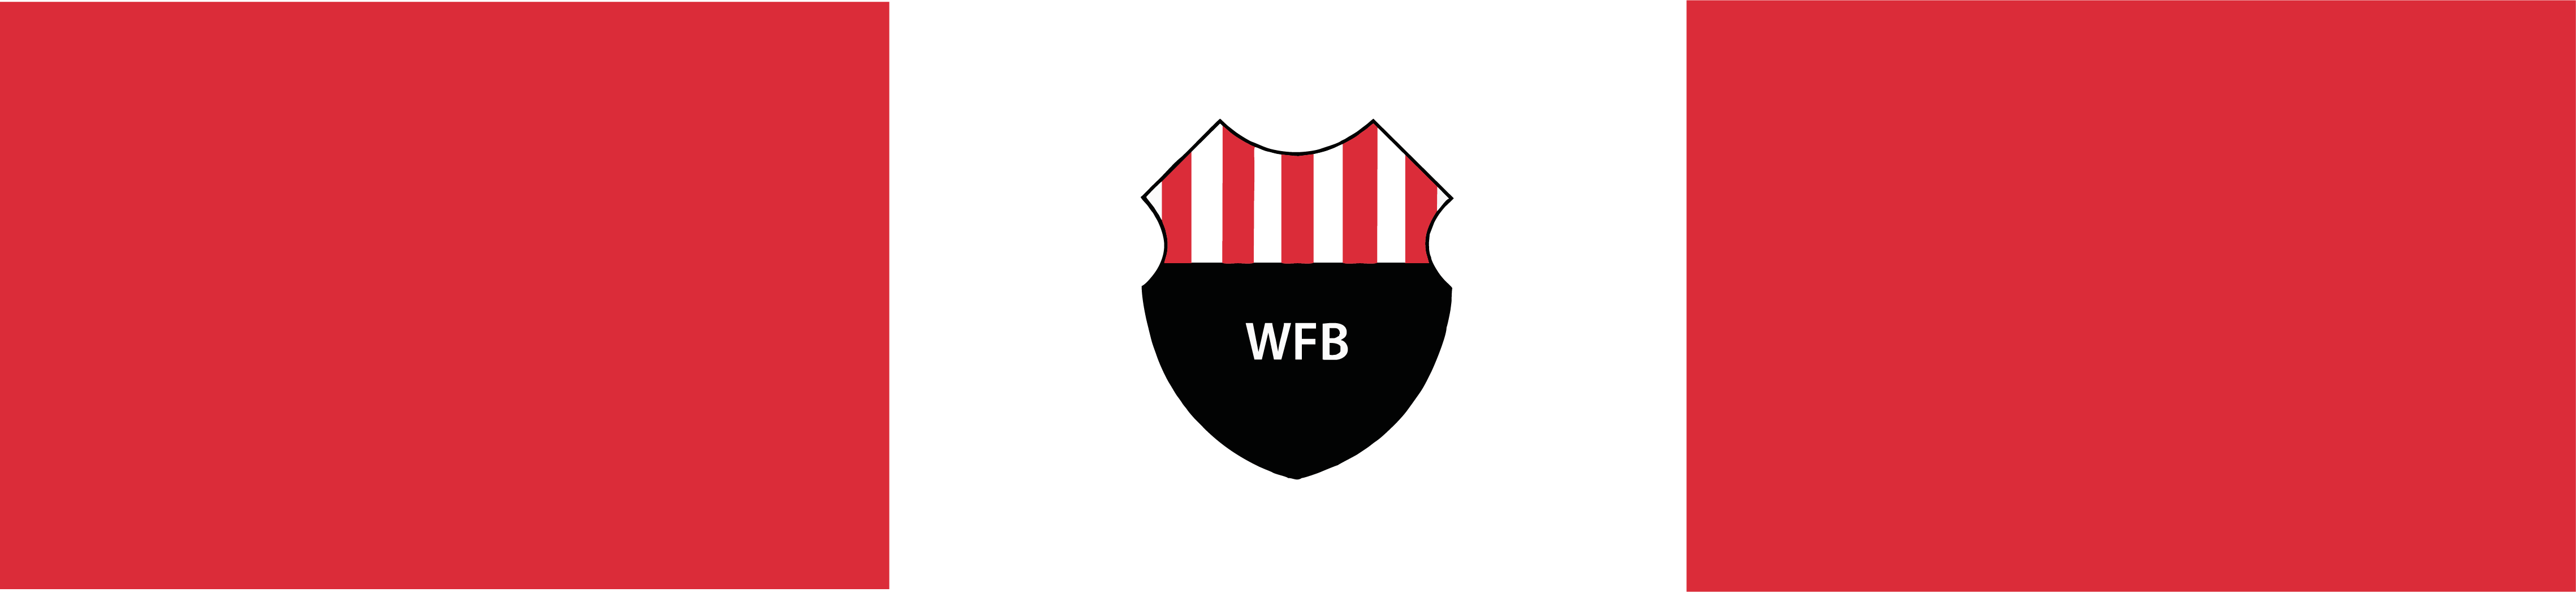 Webshop WFB